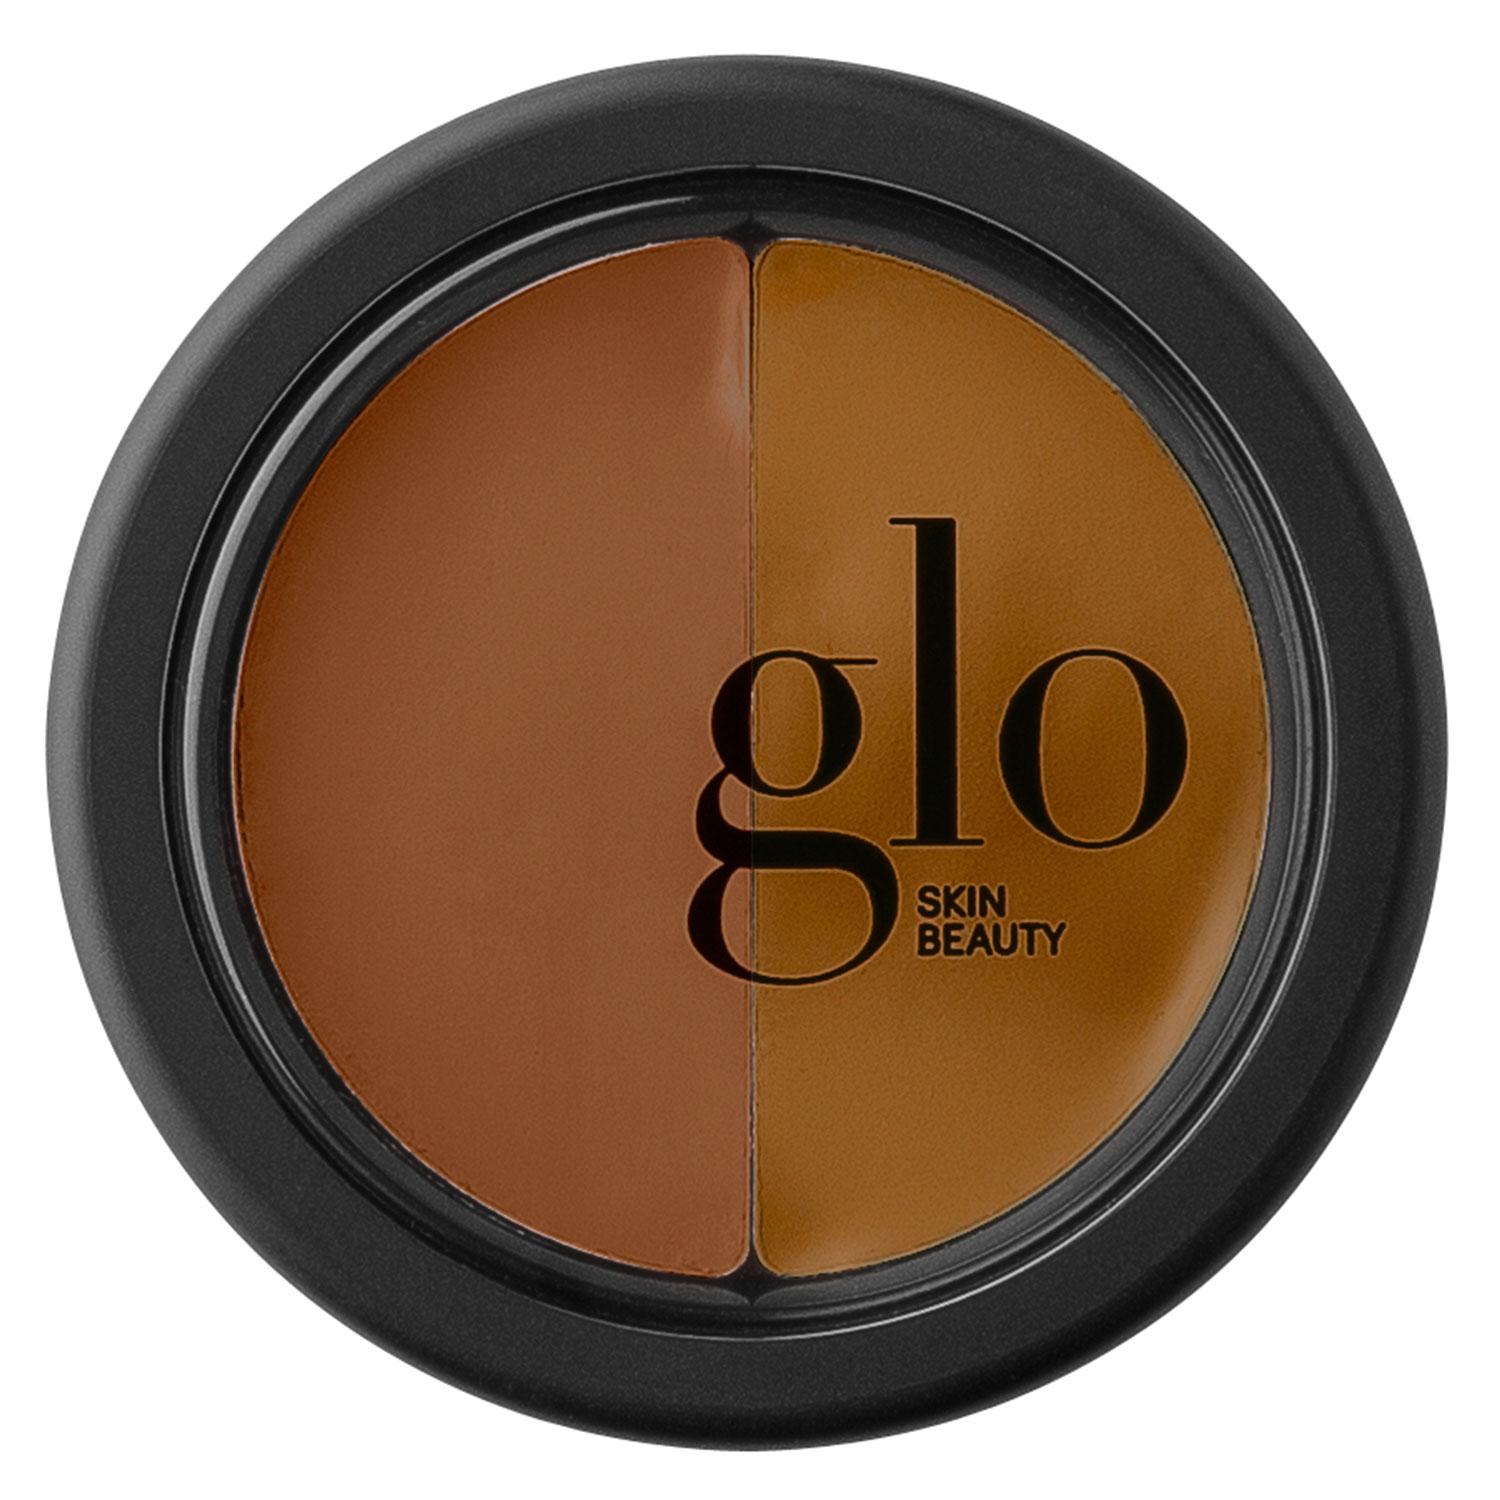 Glo Skin Beauty Concealer - Under Eye Concealer Tawny